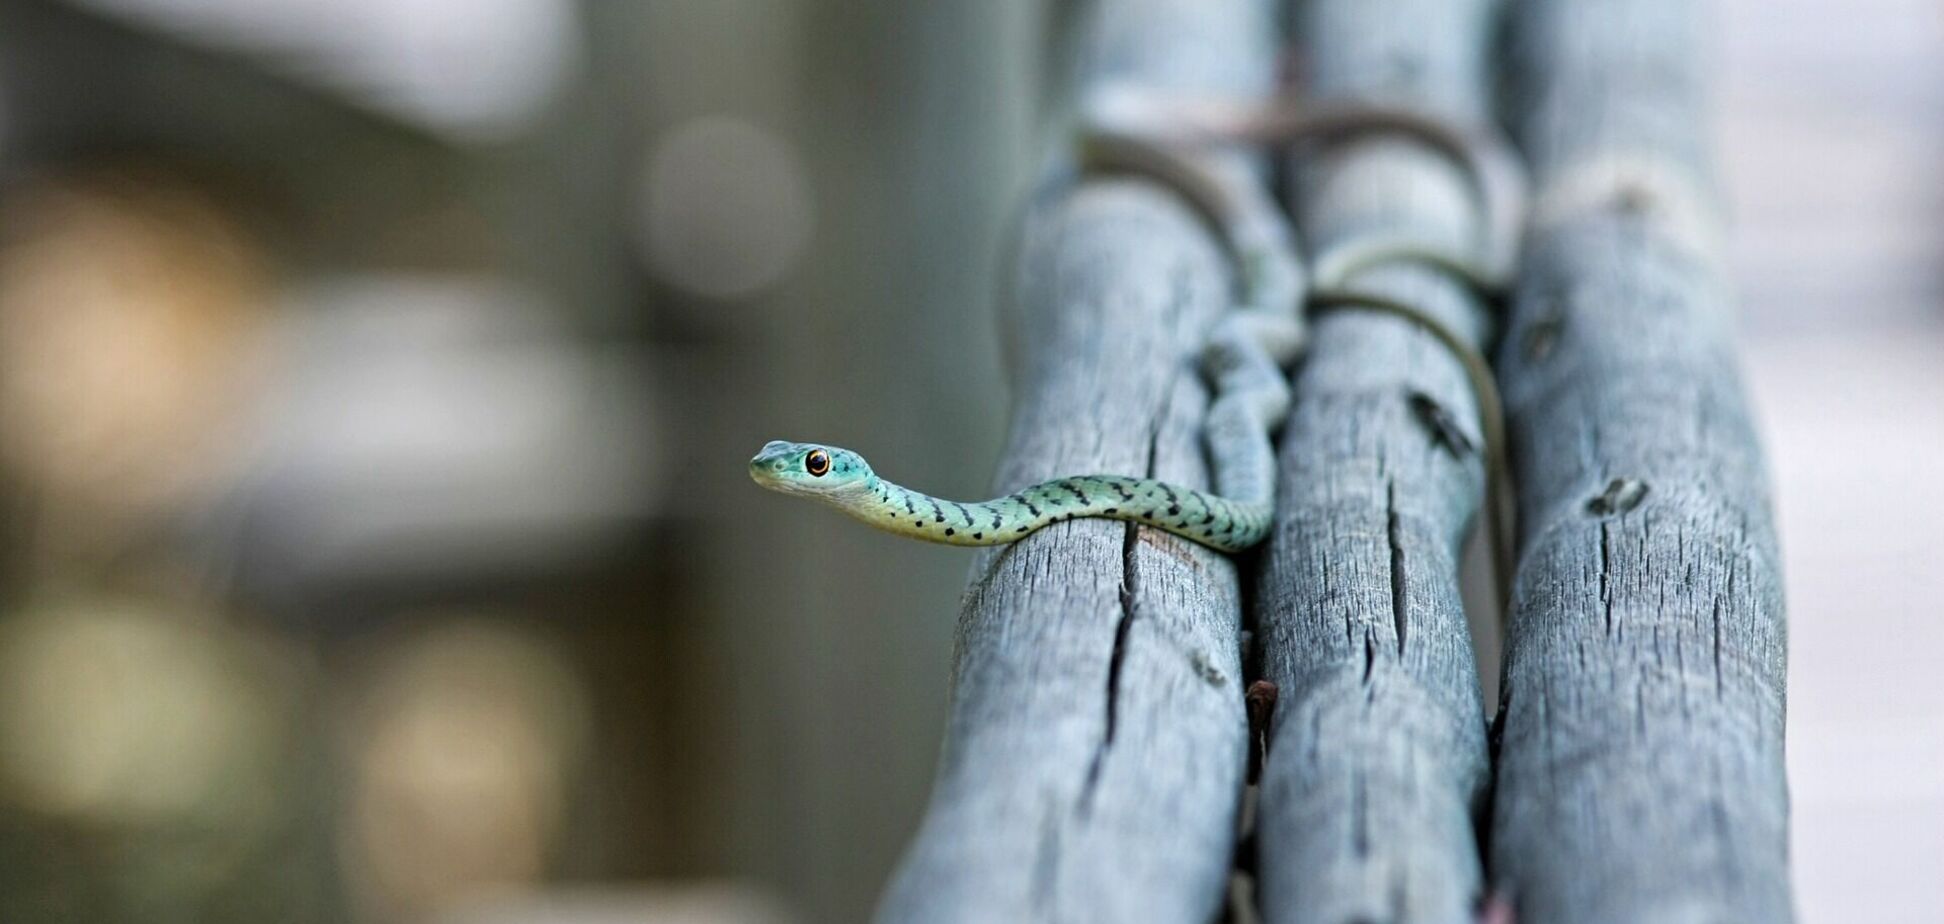 Унікальне фото зі змією спантеличило користувачів в мережі